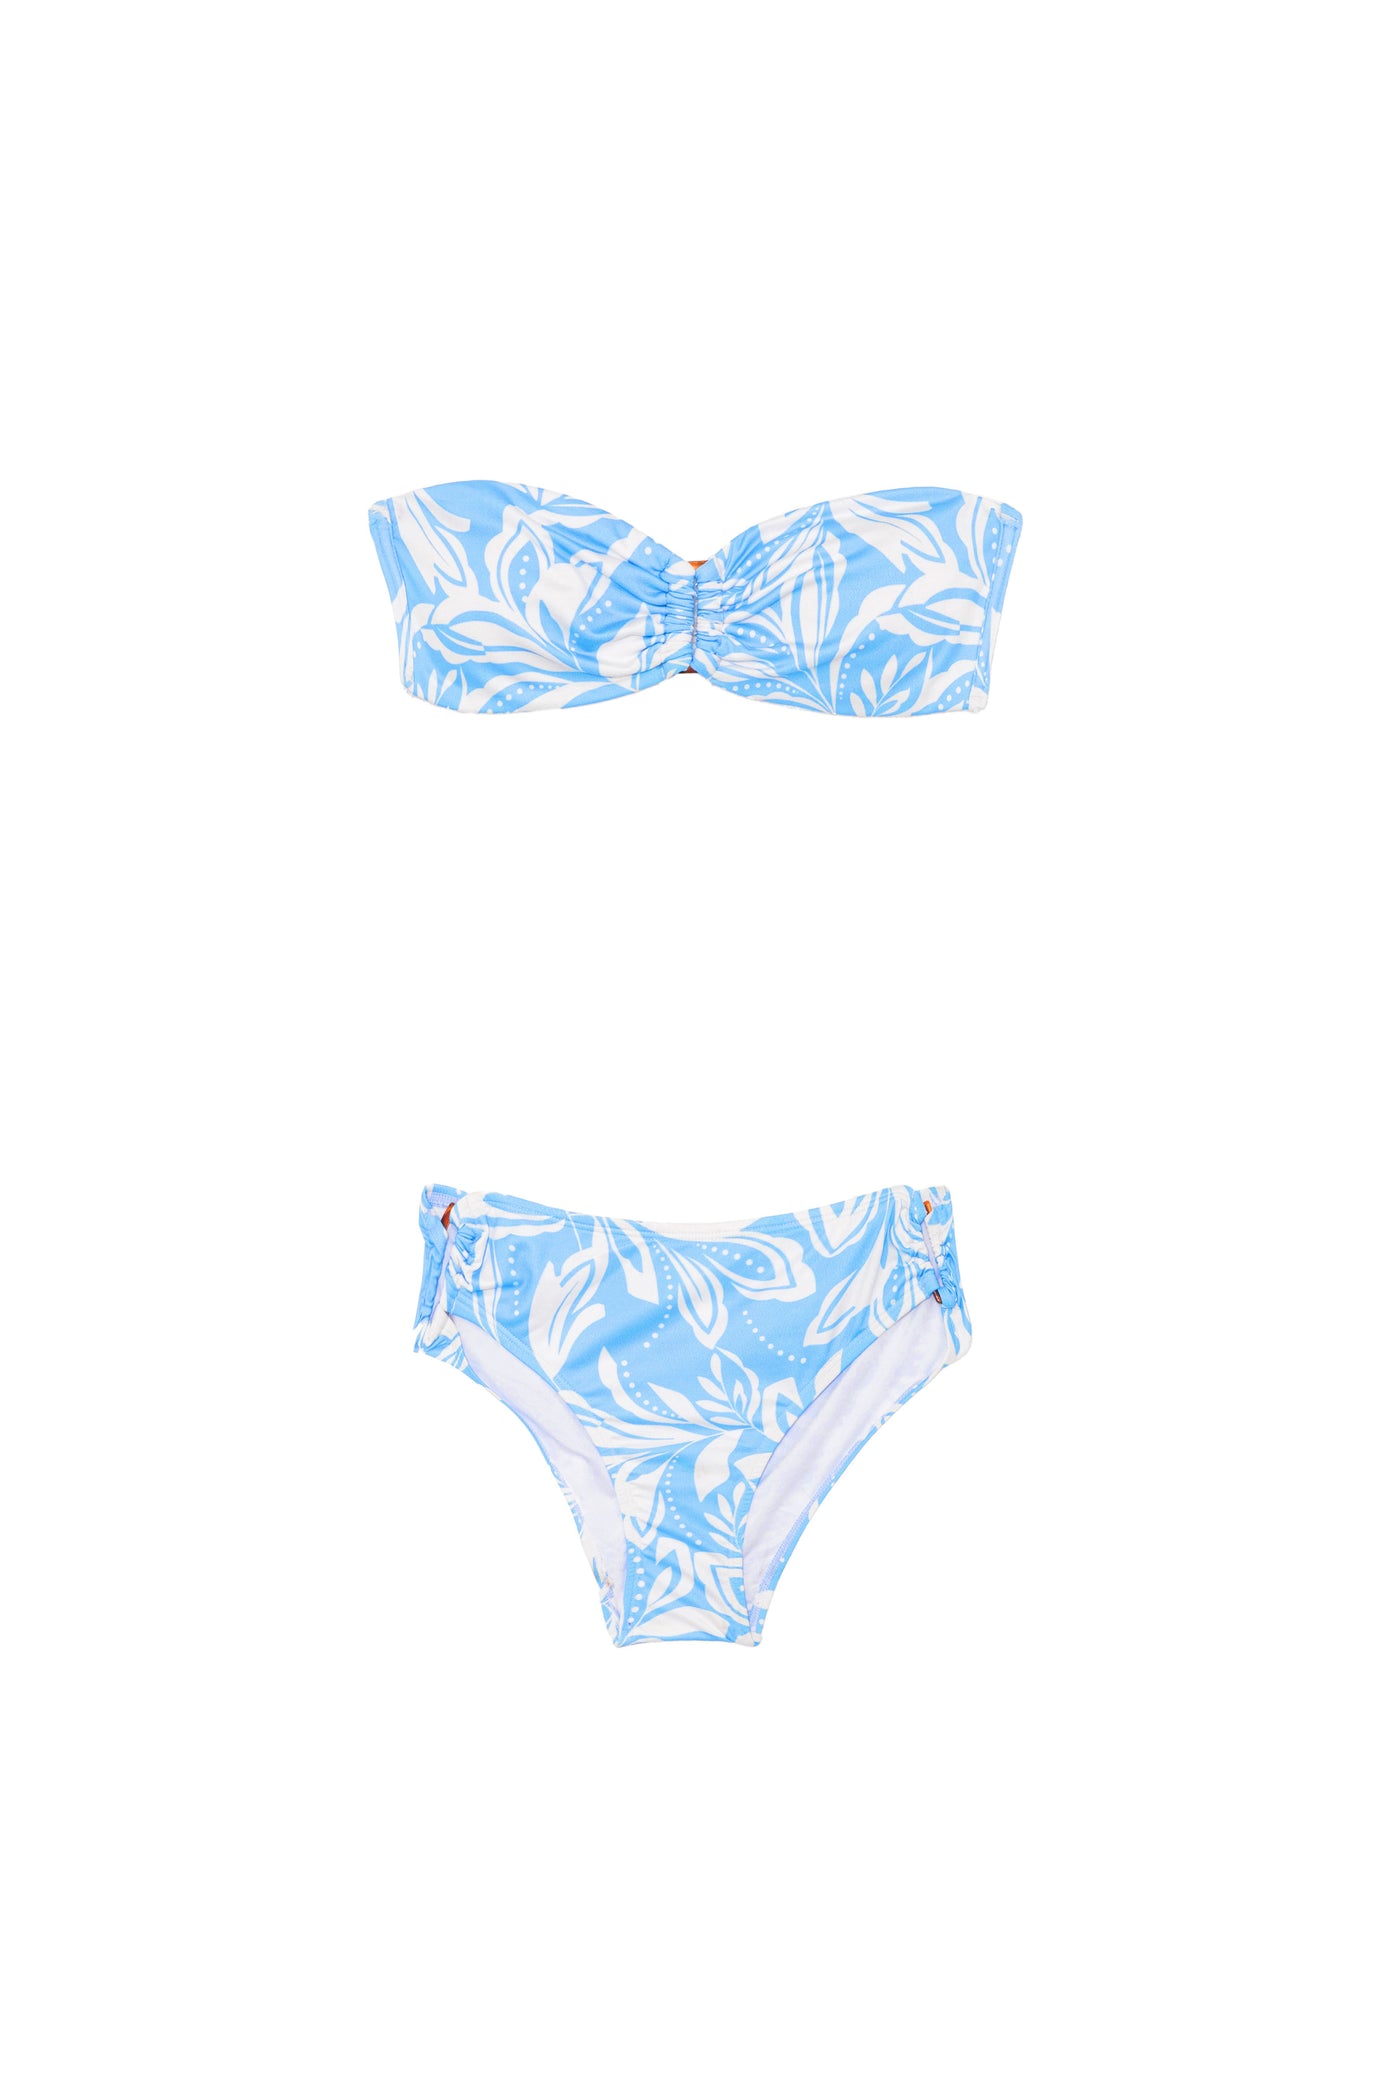 Swimwear Wenda - Bicolore Bleu